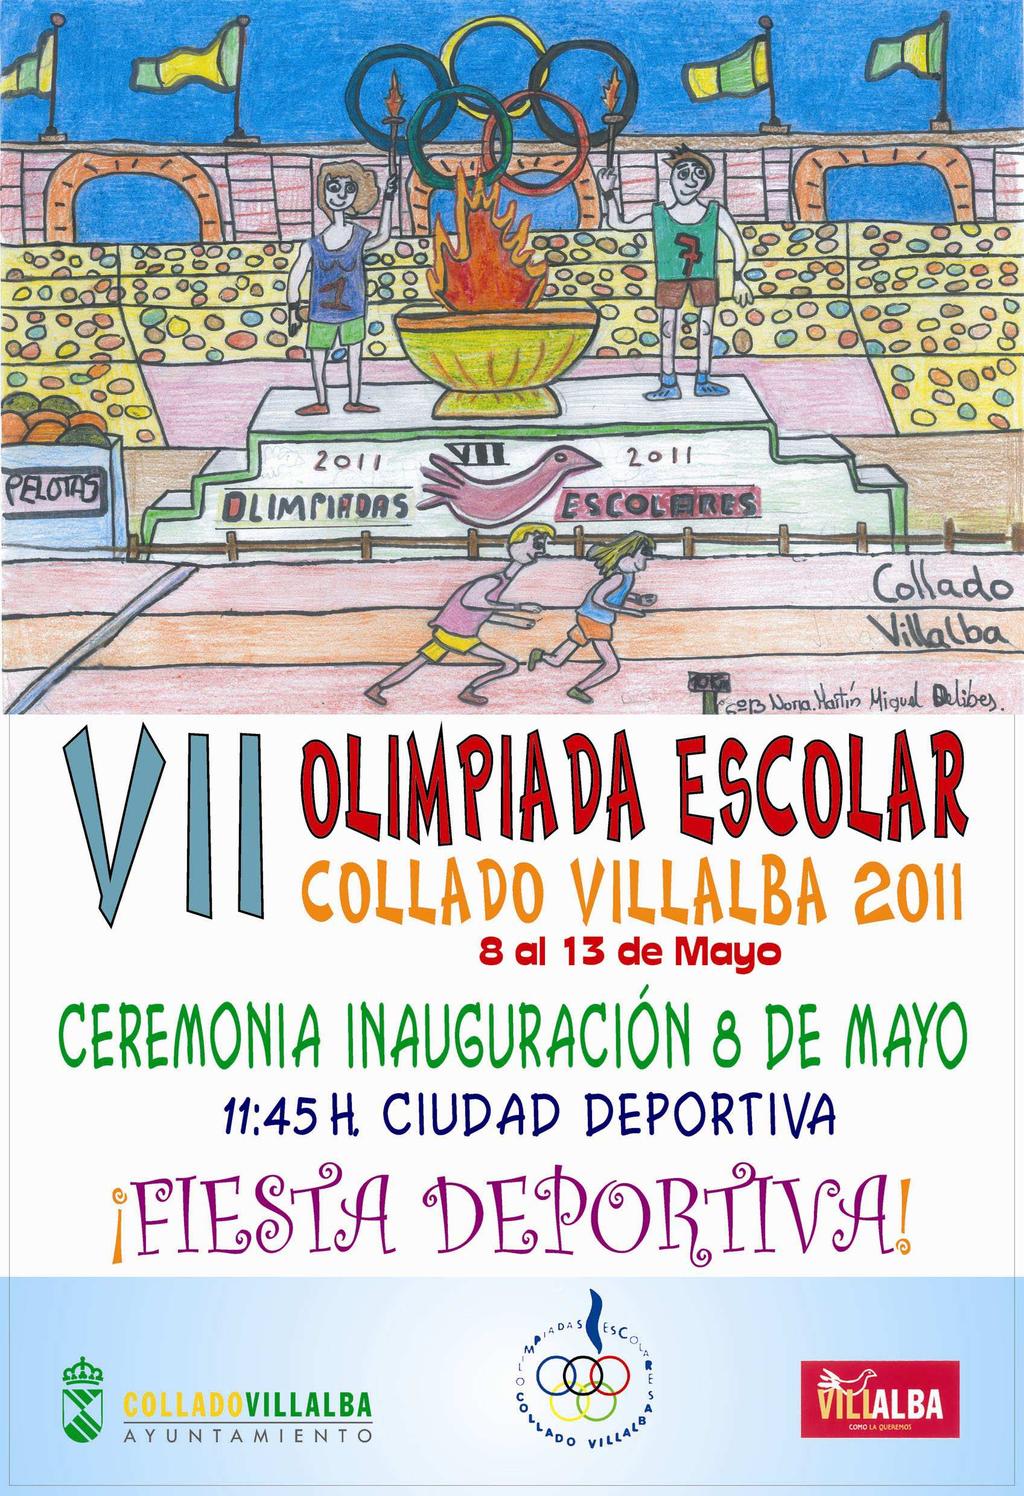 COLLADO VILALLBA 2011 del 8 al 13 Concejalía de Deportes de Collado Villalba.